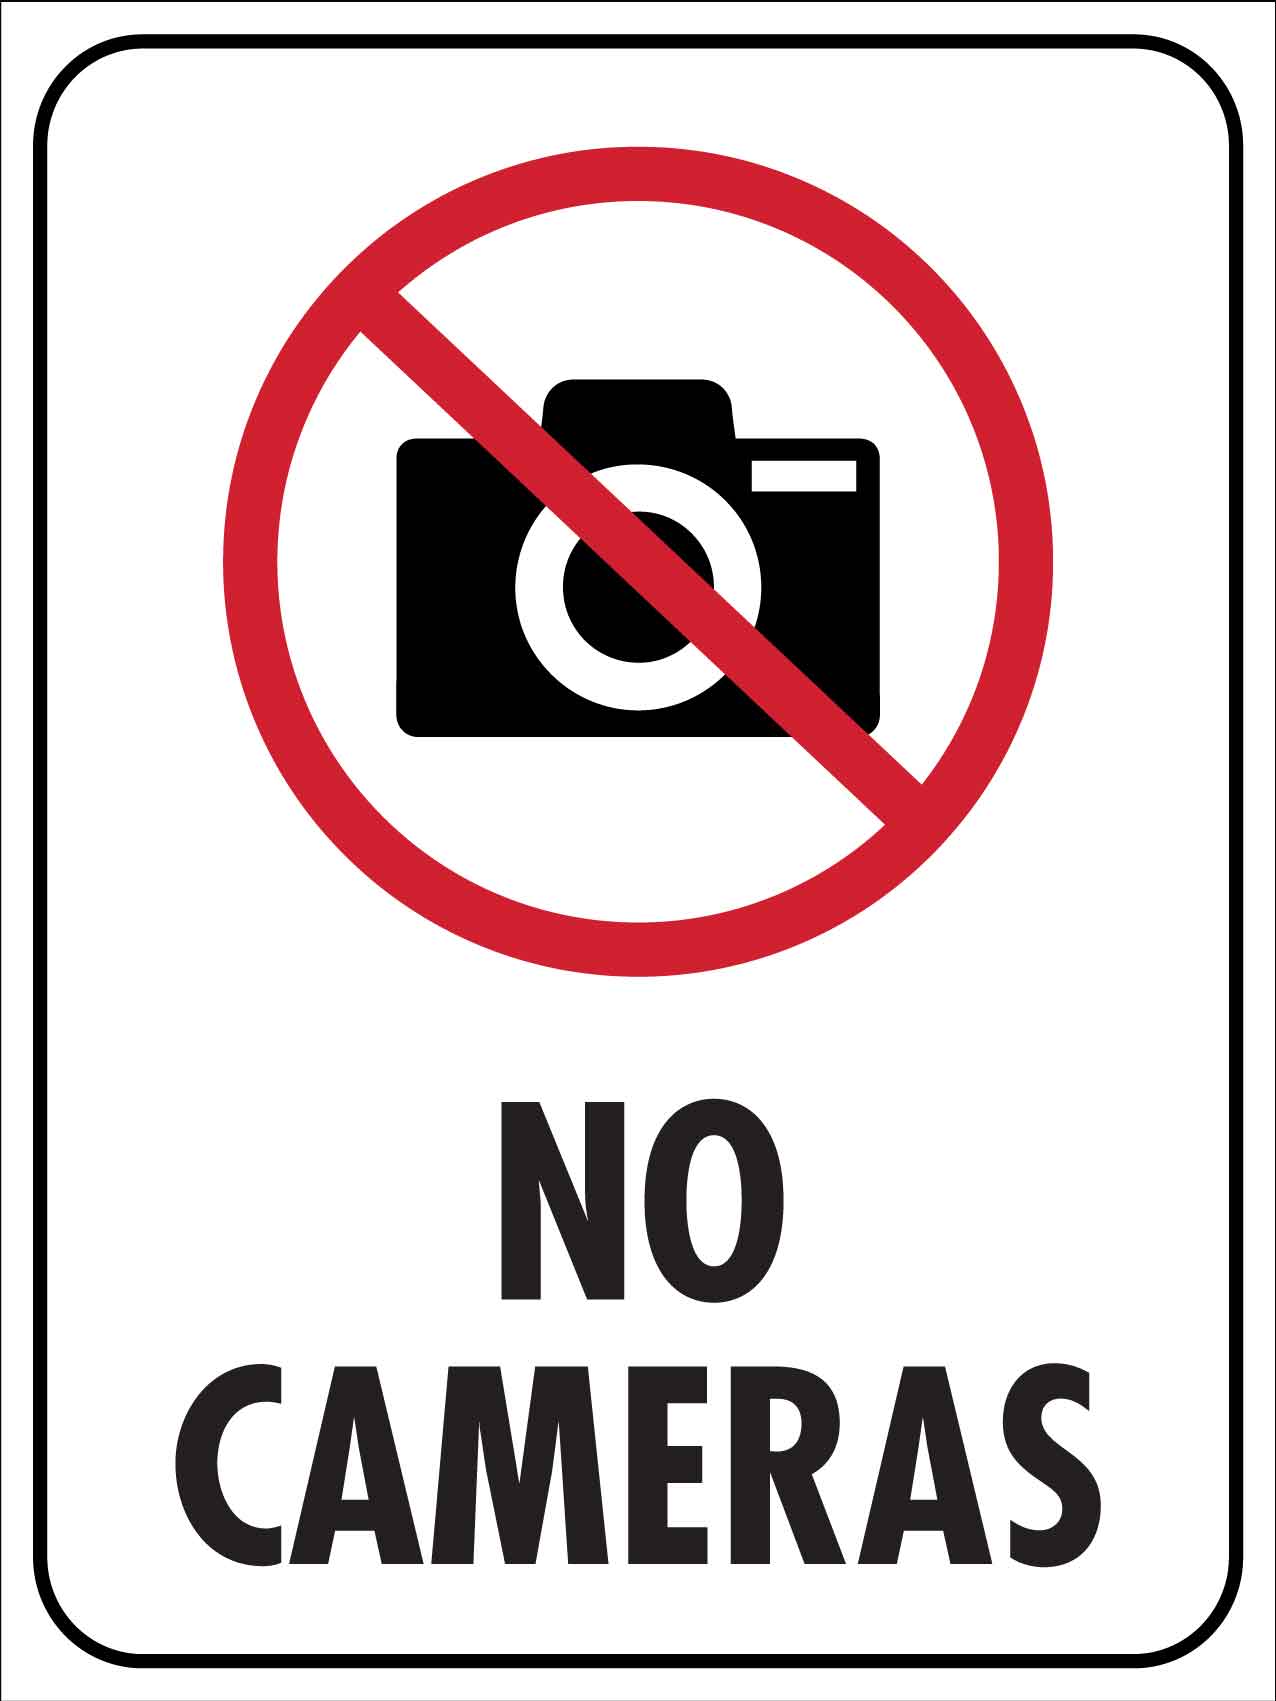 No Cameras Sign